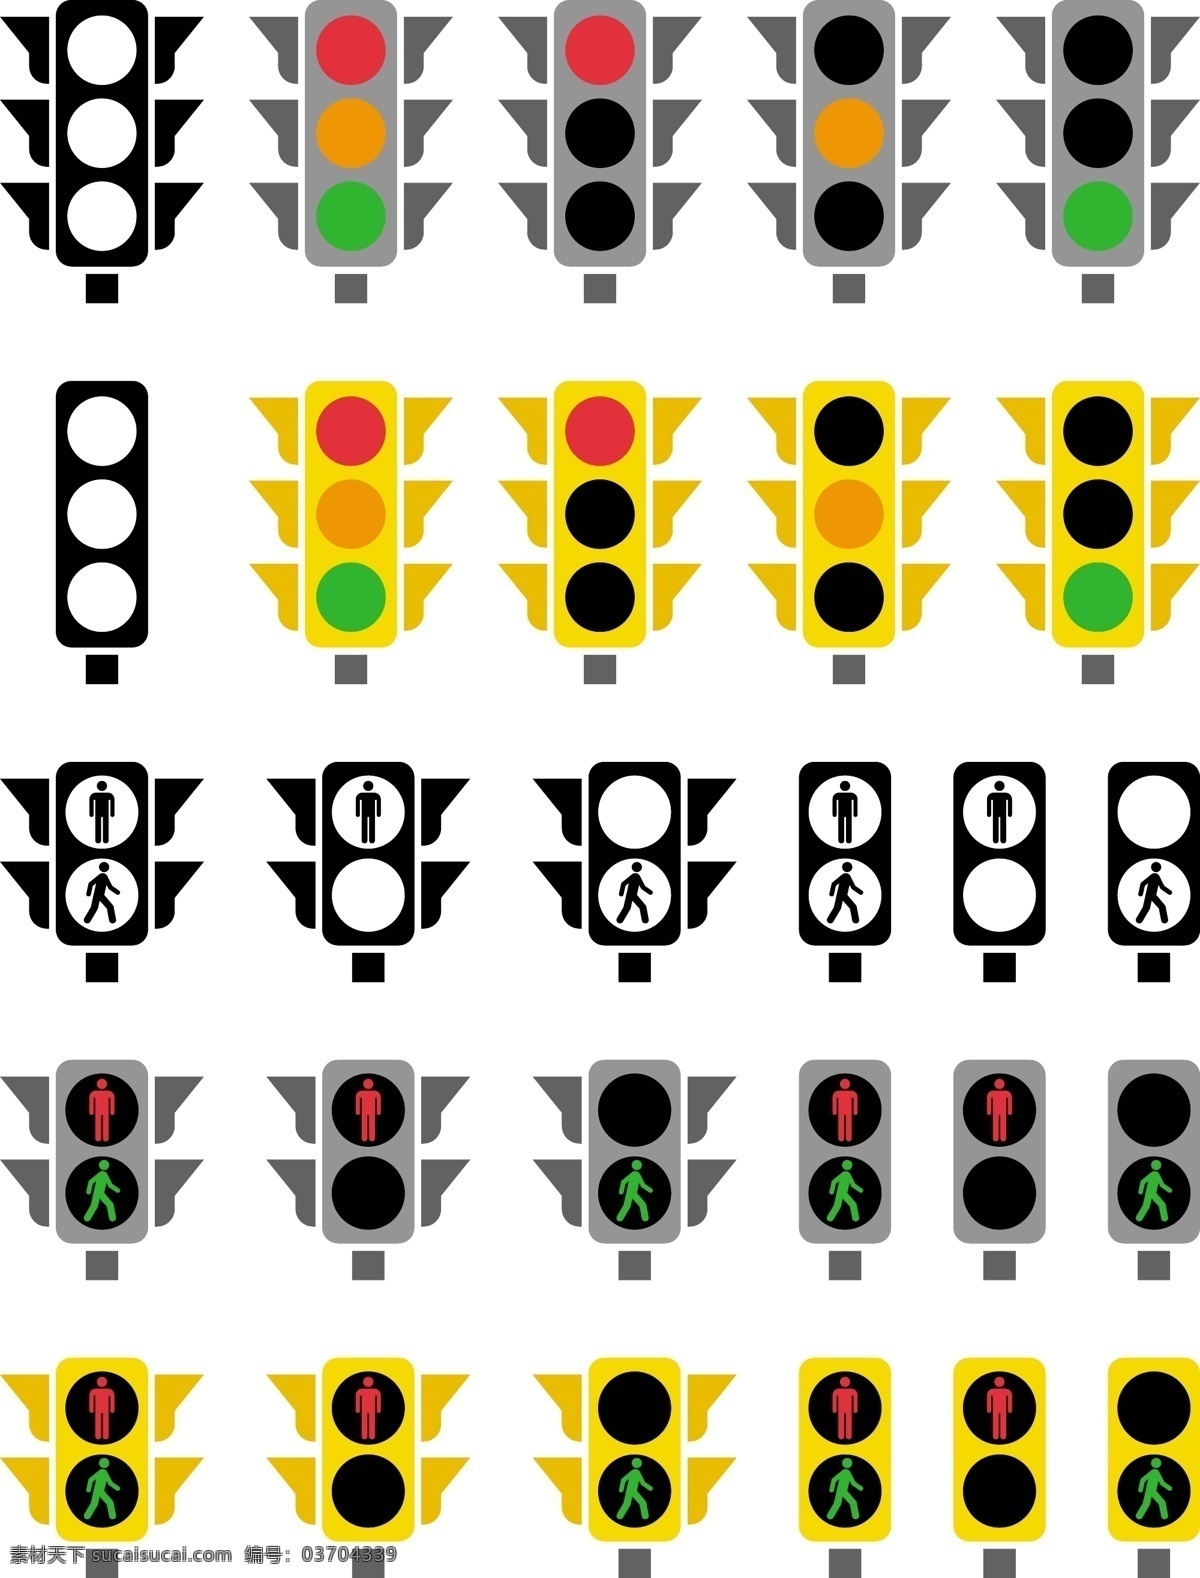 交通指示灯 安全 指示 红绿灯 红灯 绿灯 禁止 通行 矢量